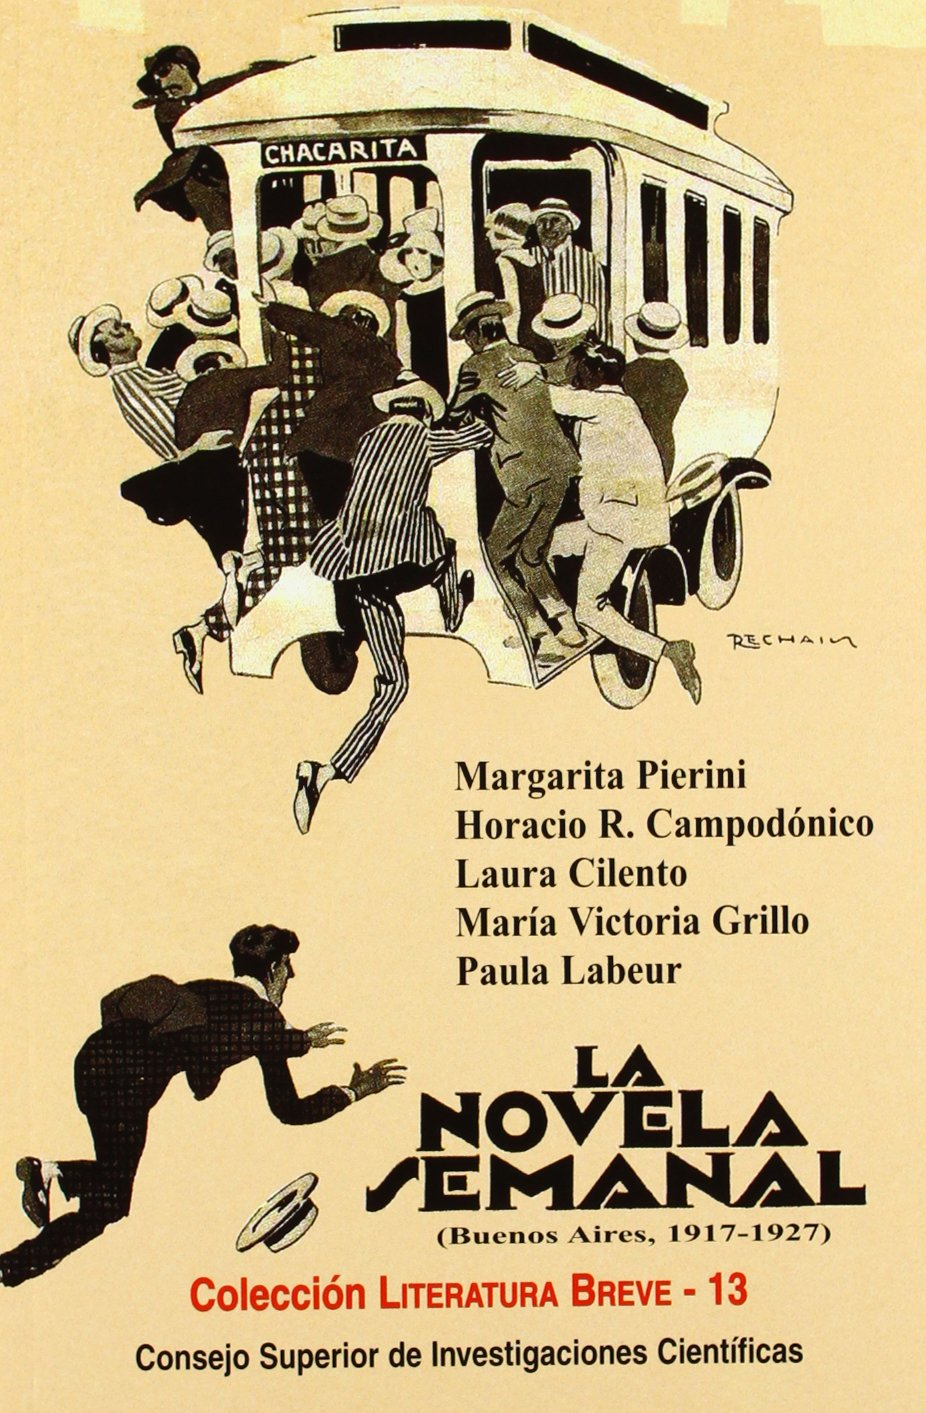 La Novela semanal (Buenos Aires, 1917-1927) : un proyecto editorial para la ciudad moderna